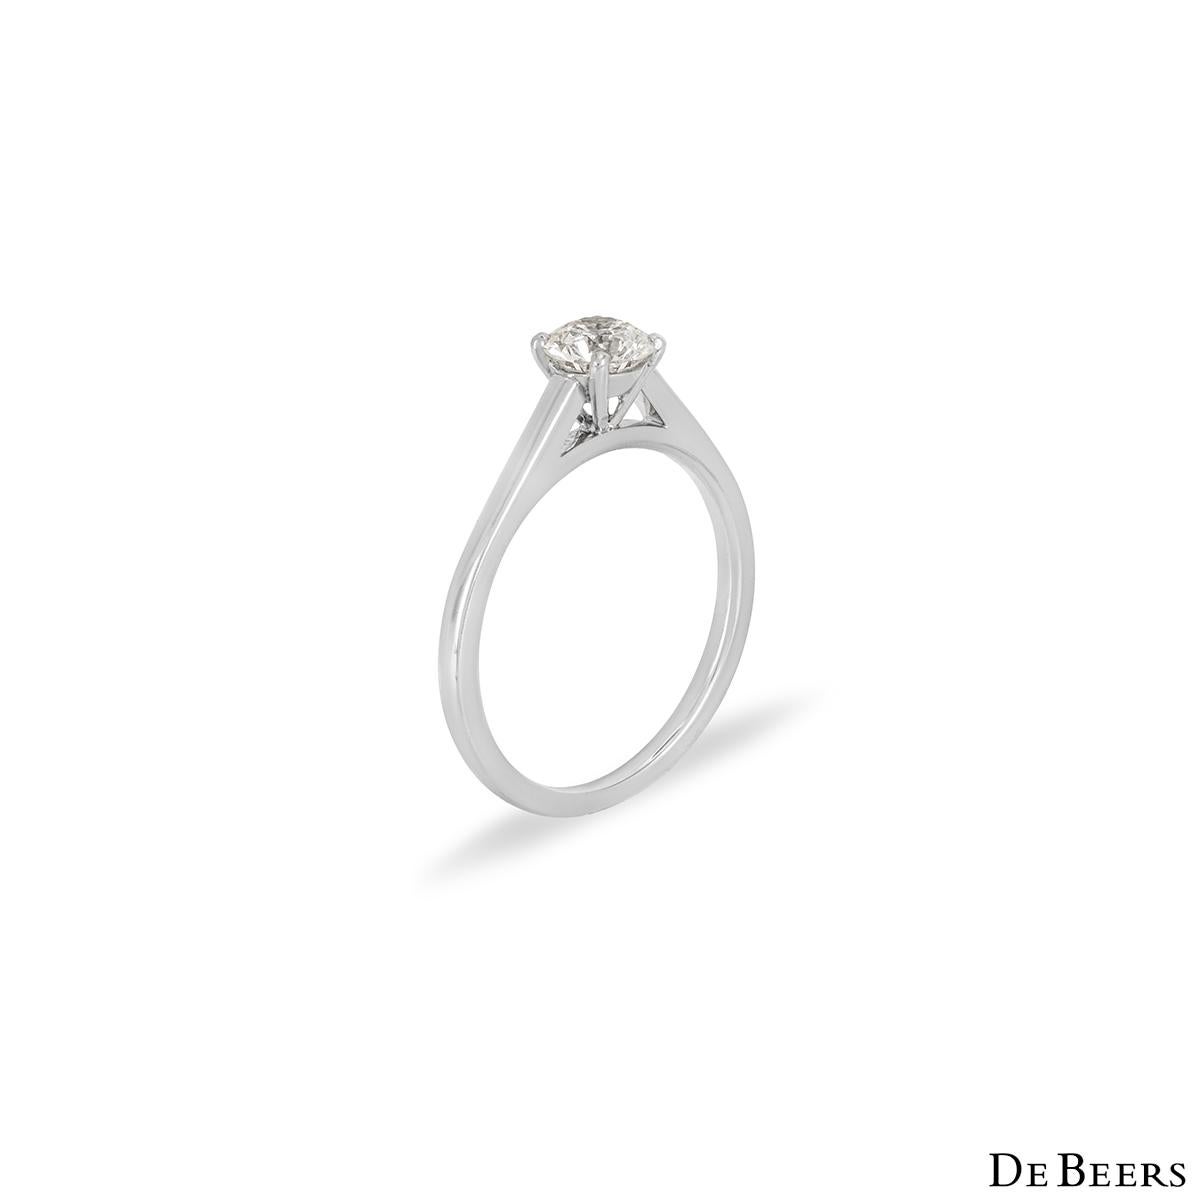 Une magnifique bague en platine sertie de diamants de la collection Classic de De Beers. La bague est ornée d'un diamant rond de taille brillant dans une monture à quatre griffes, d'un poids de 0,52ct, de couleur H et de pureté VS1. La bague est de